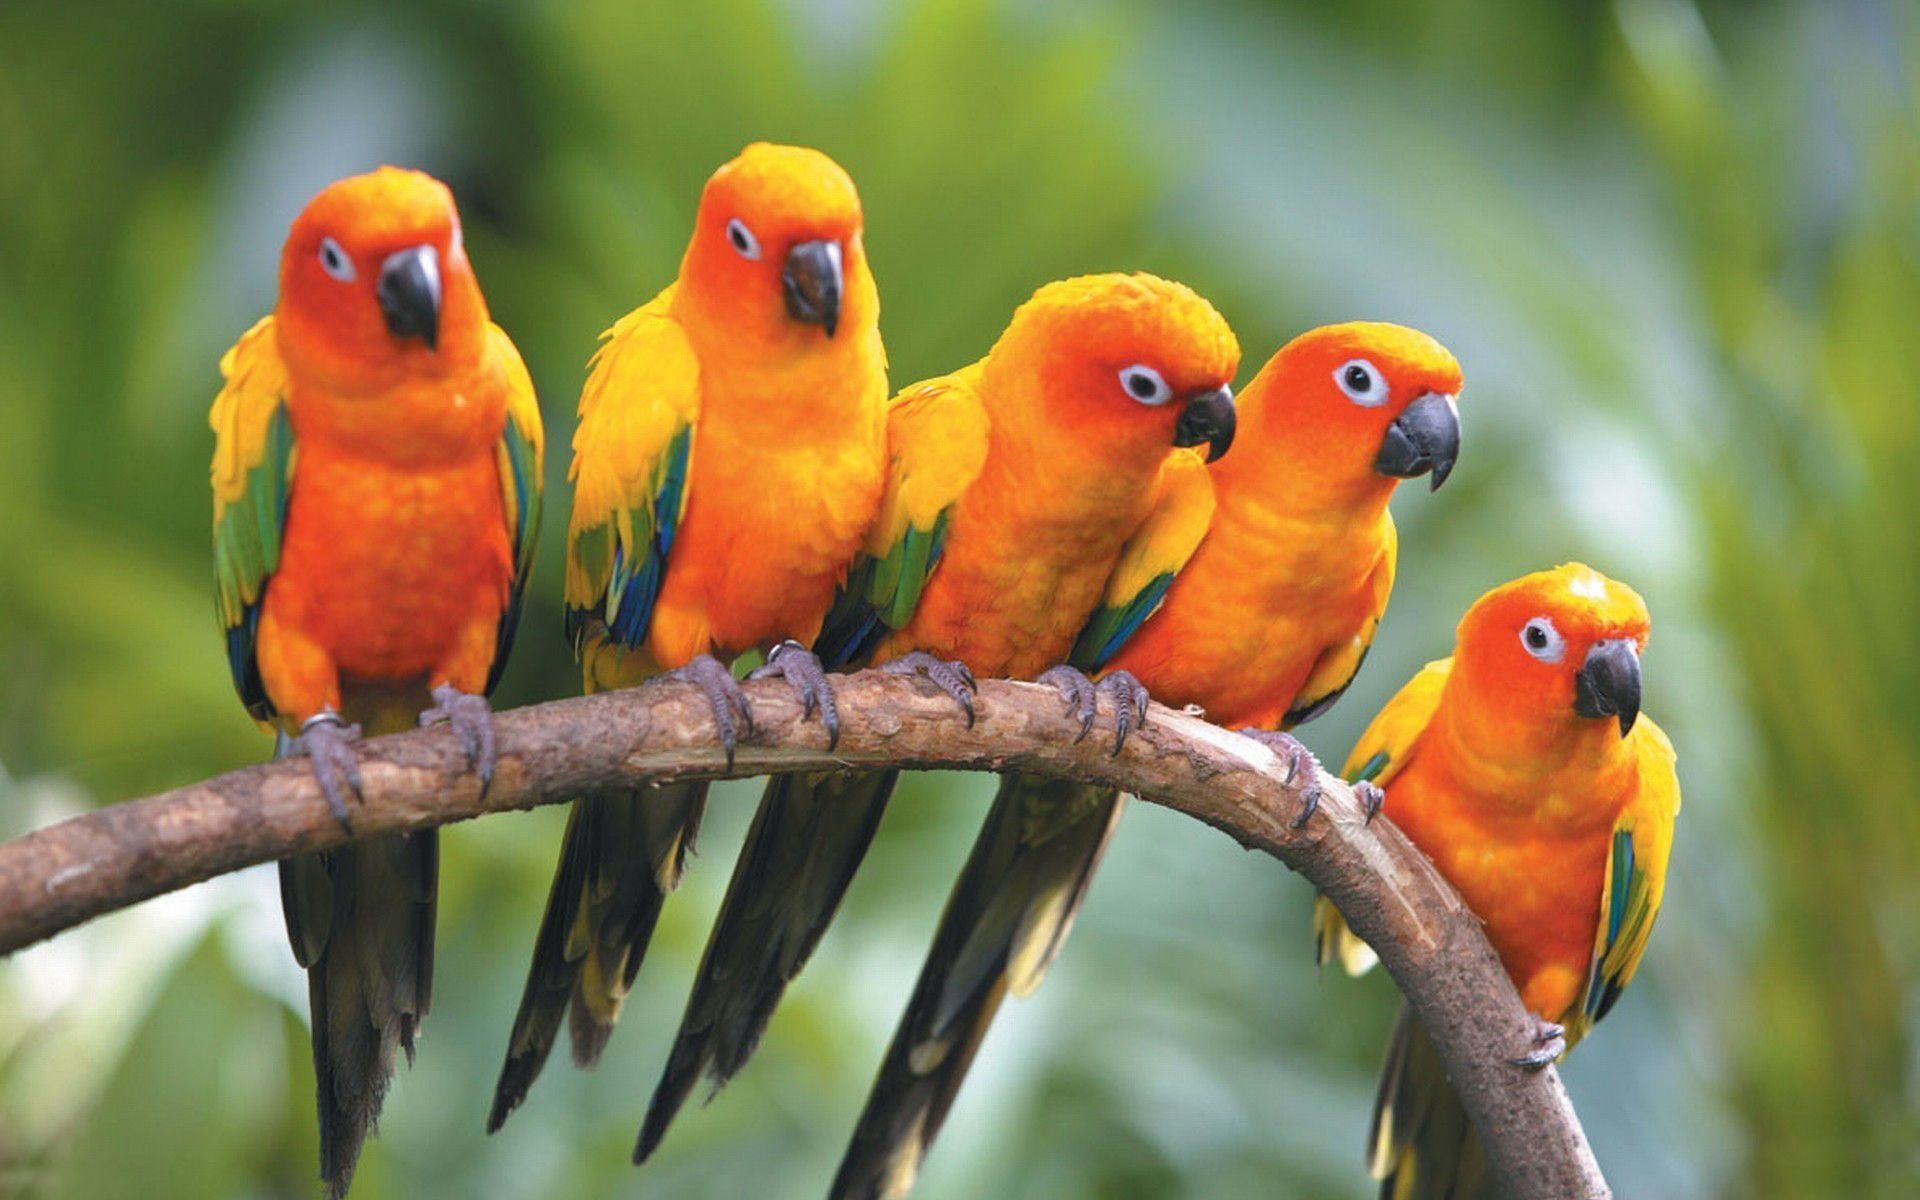 Wp Content Uploads 2014 07 Parrot Orange In Group Hd. Pet Birds, Colorful Birds, Conure Parrots